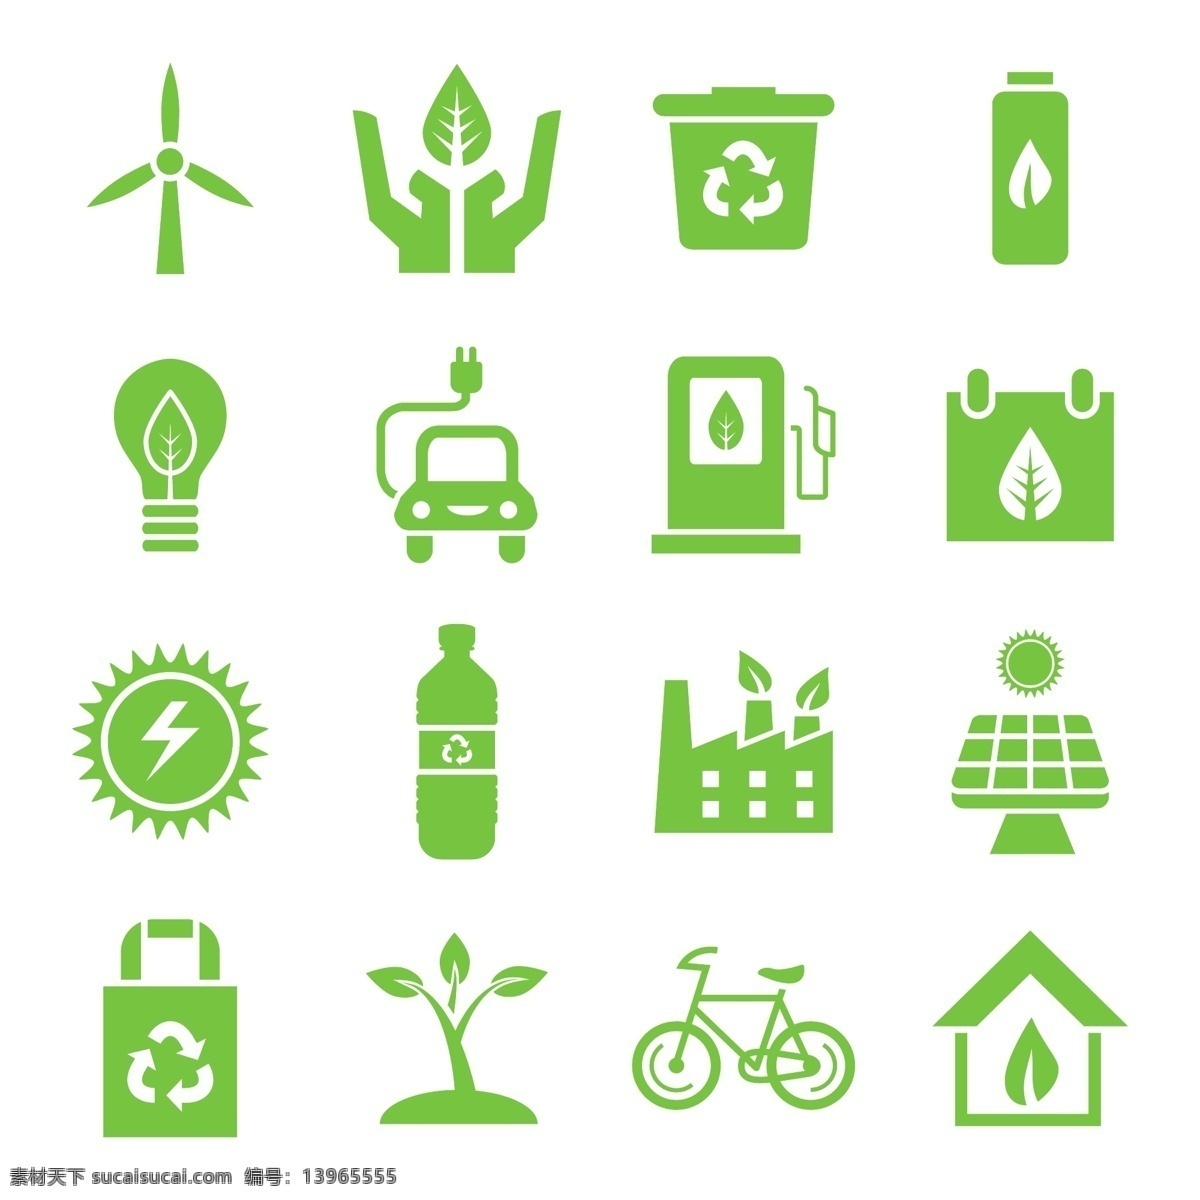 绿色 环境 图标 集 标志 树 车 房子 家庭 自然 模板 叶 标志设计 自行车 图形 树叶 生态 灯泡